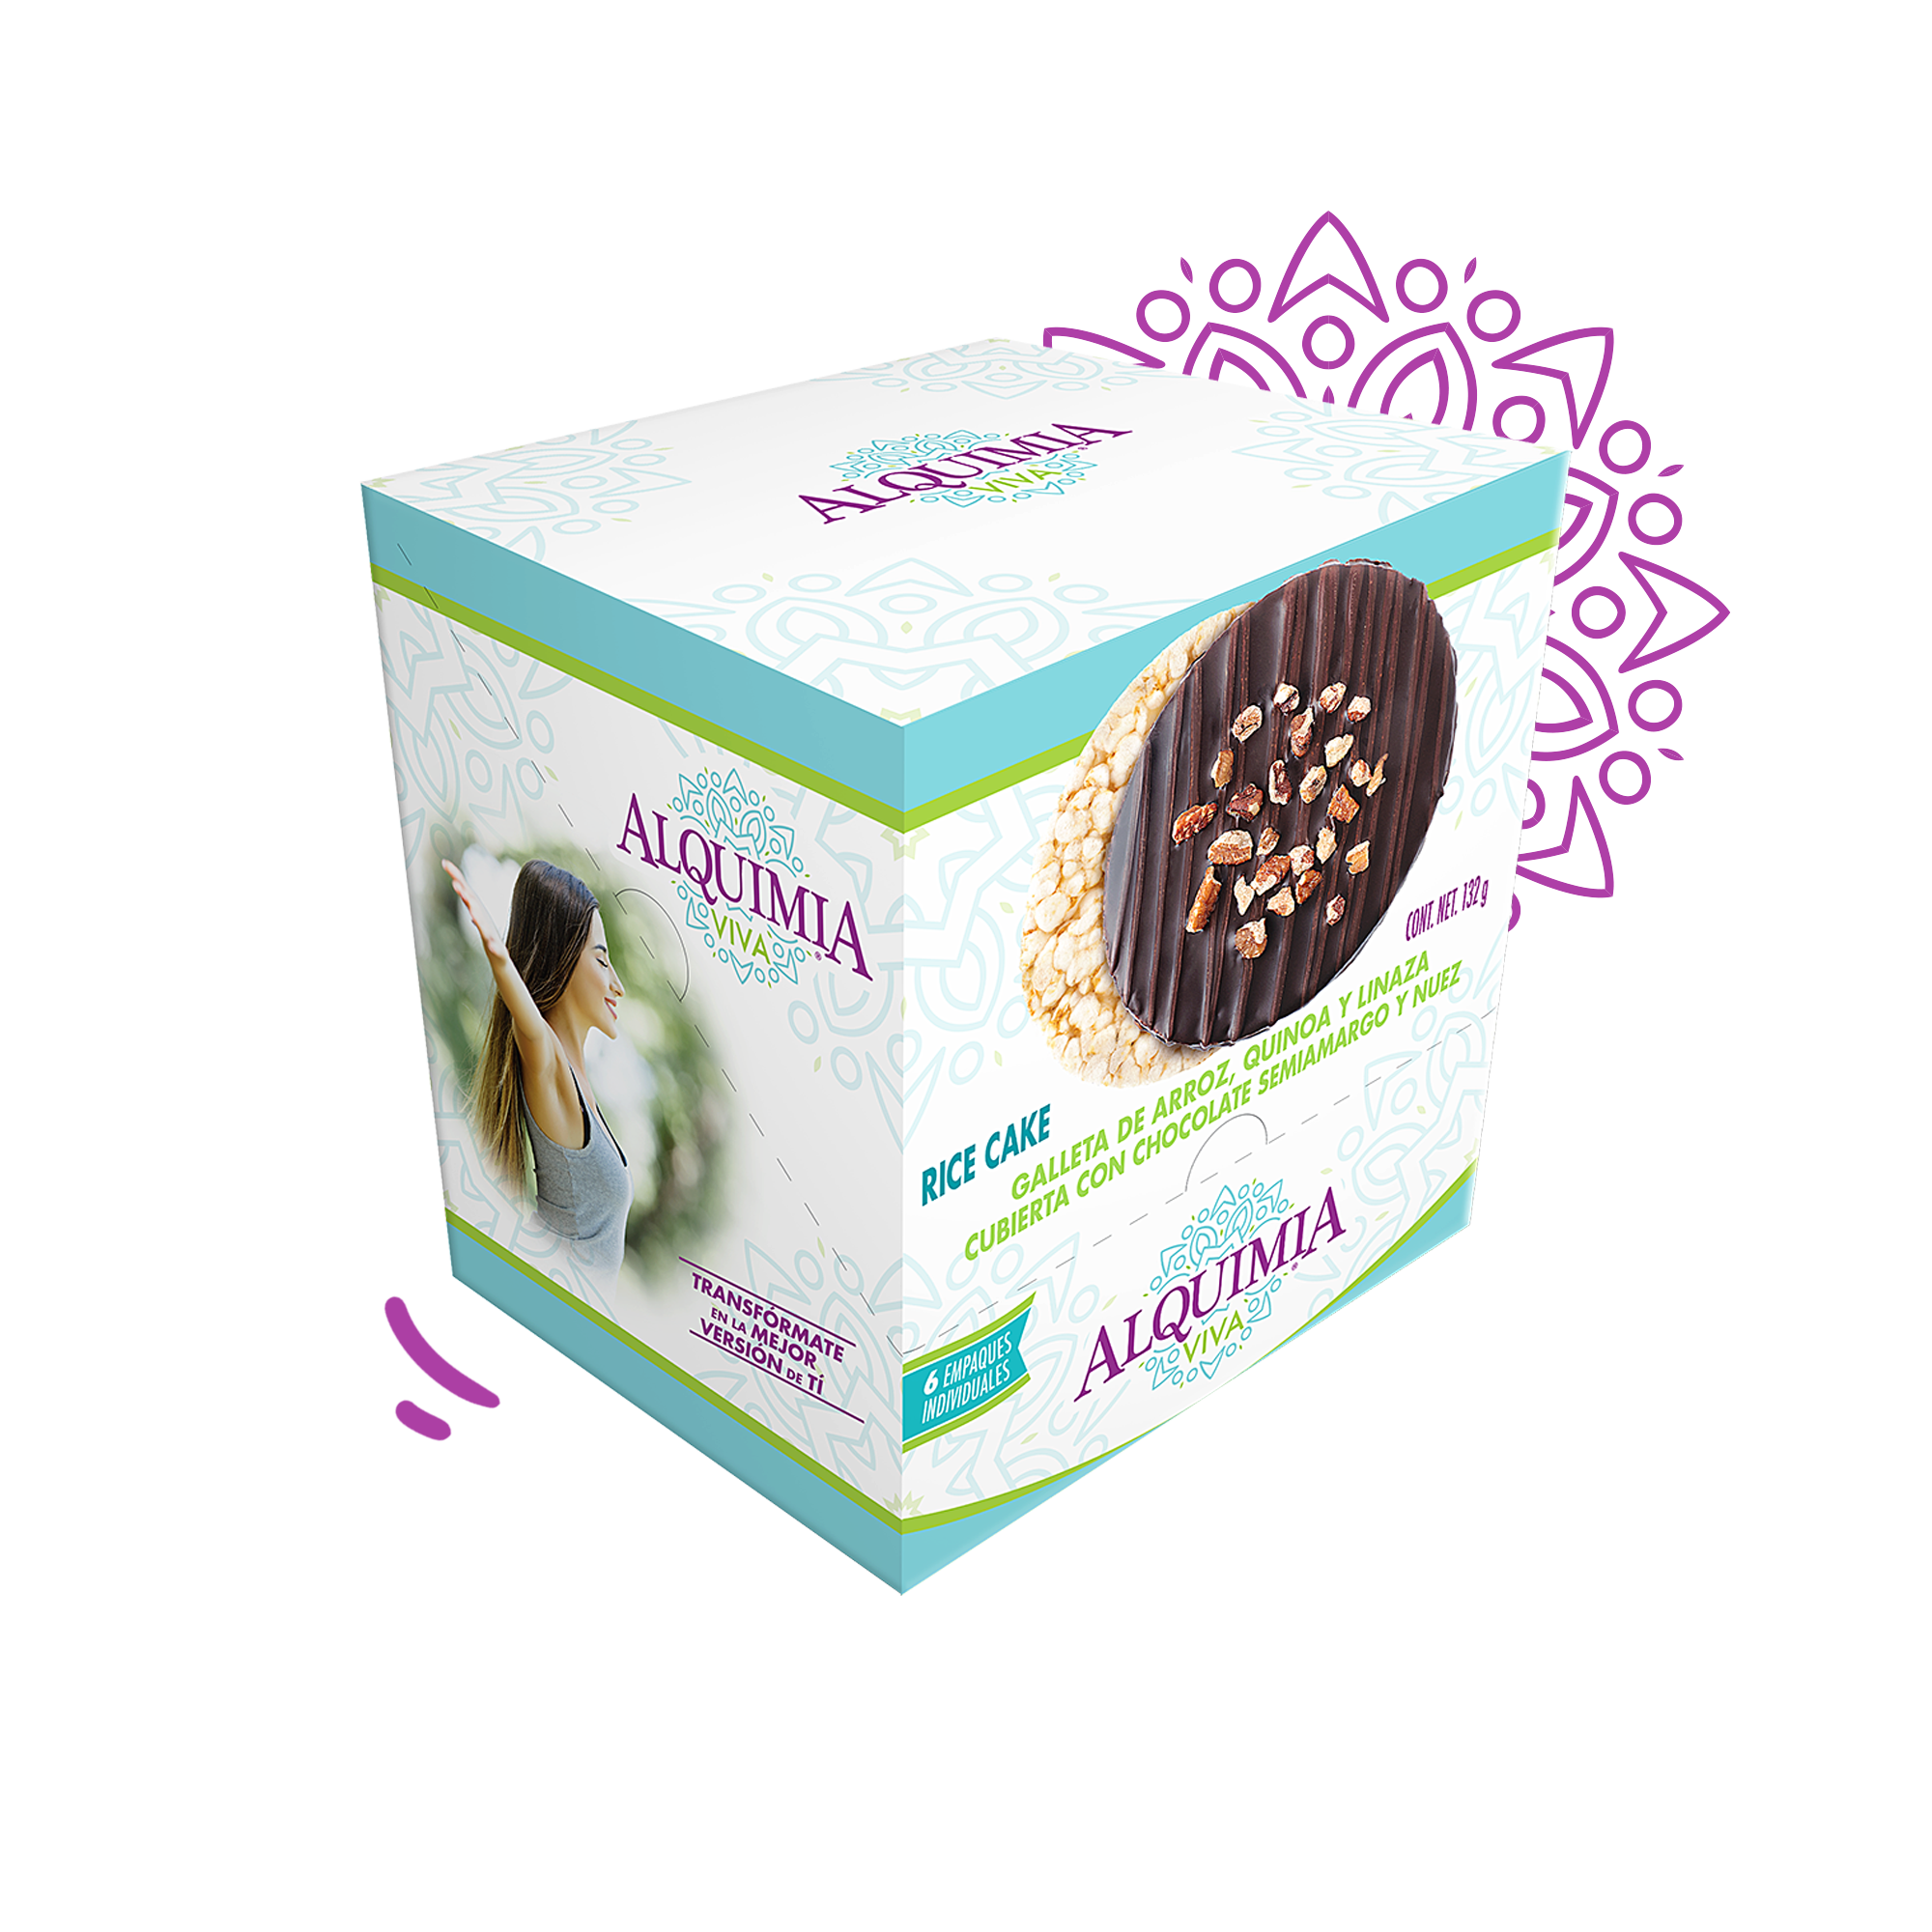 Rice Cakes chocolate semiamargo con nuez (Display con 6 piezas de 22g)